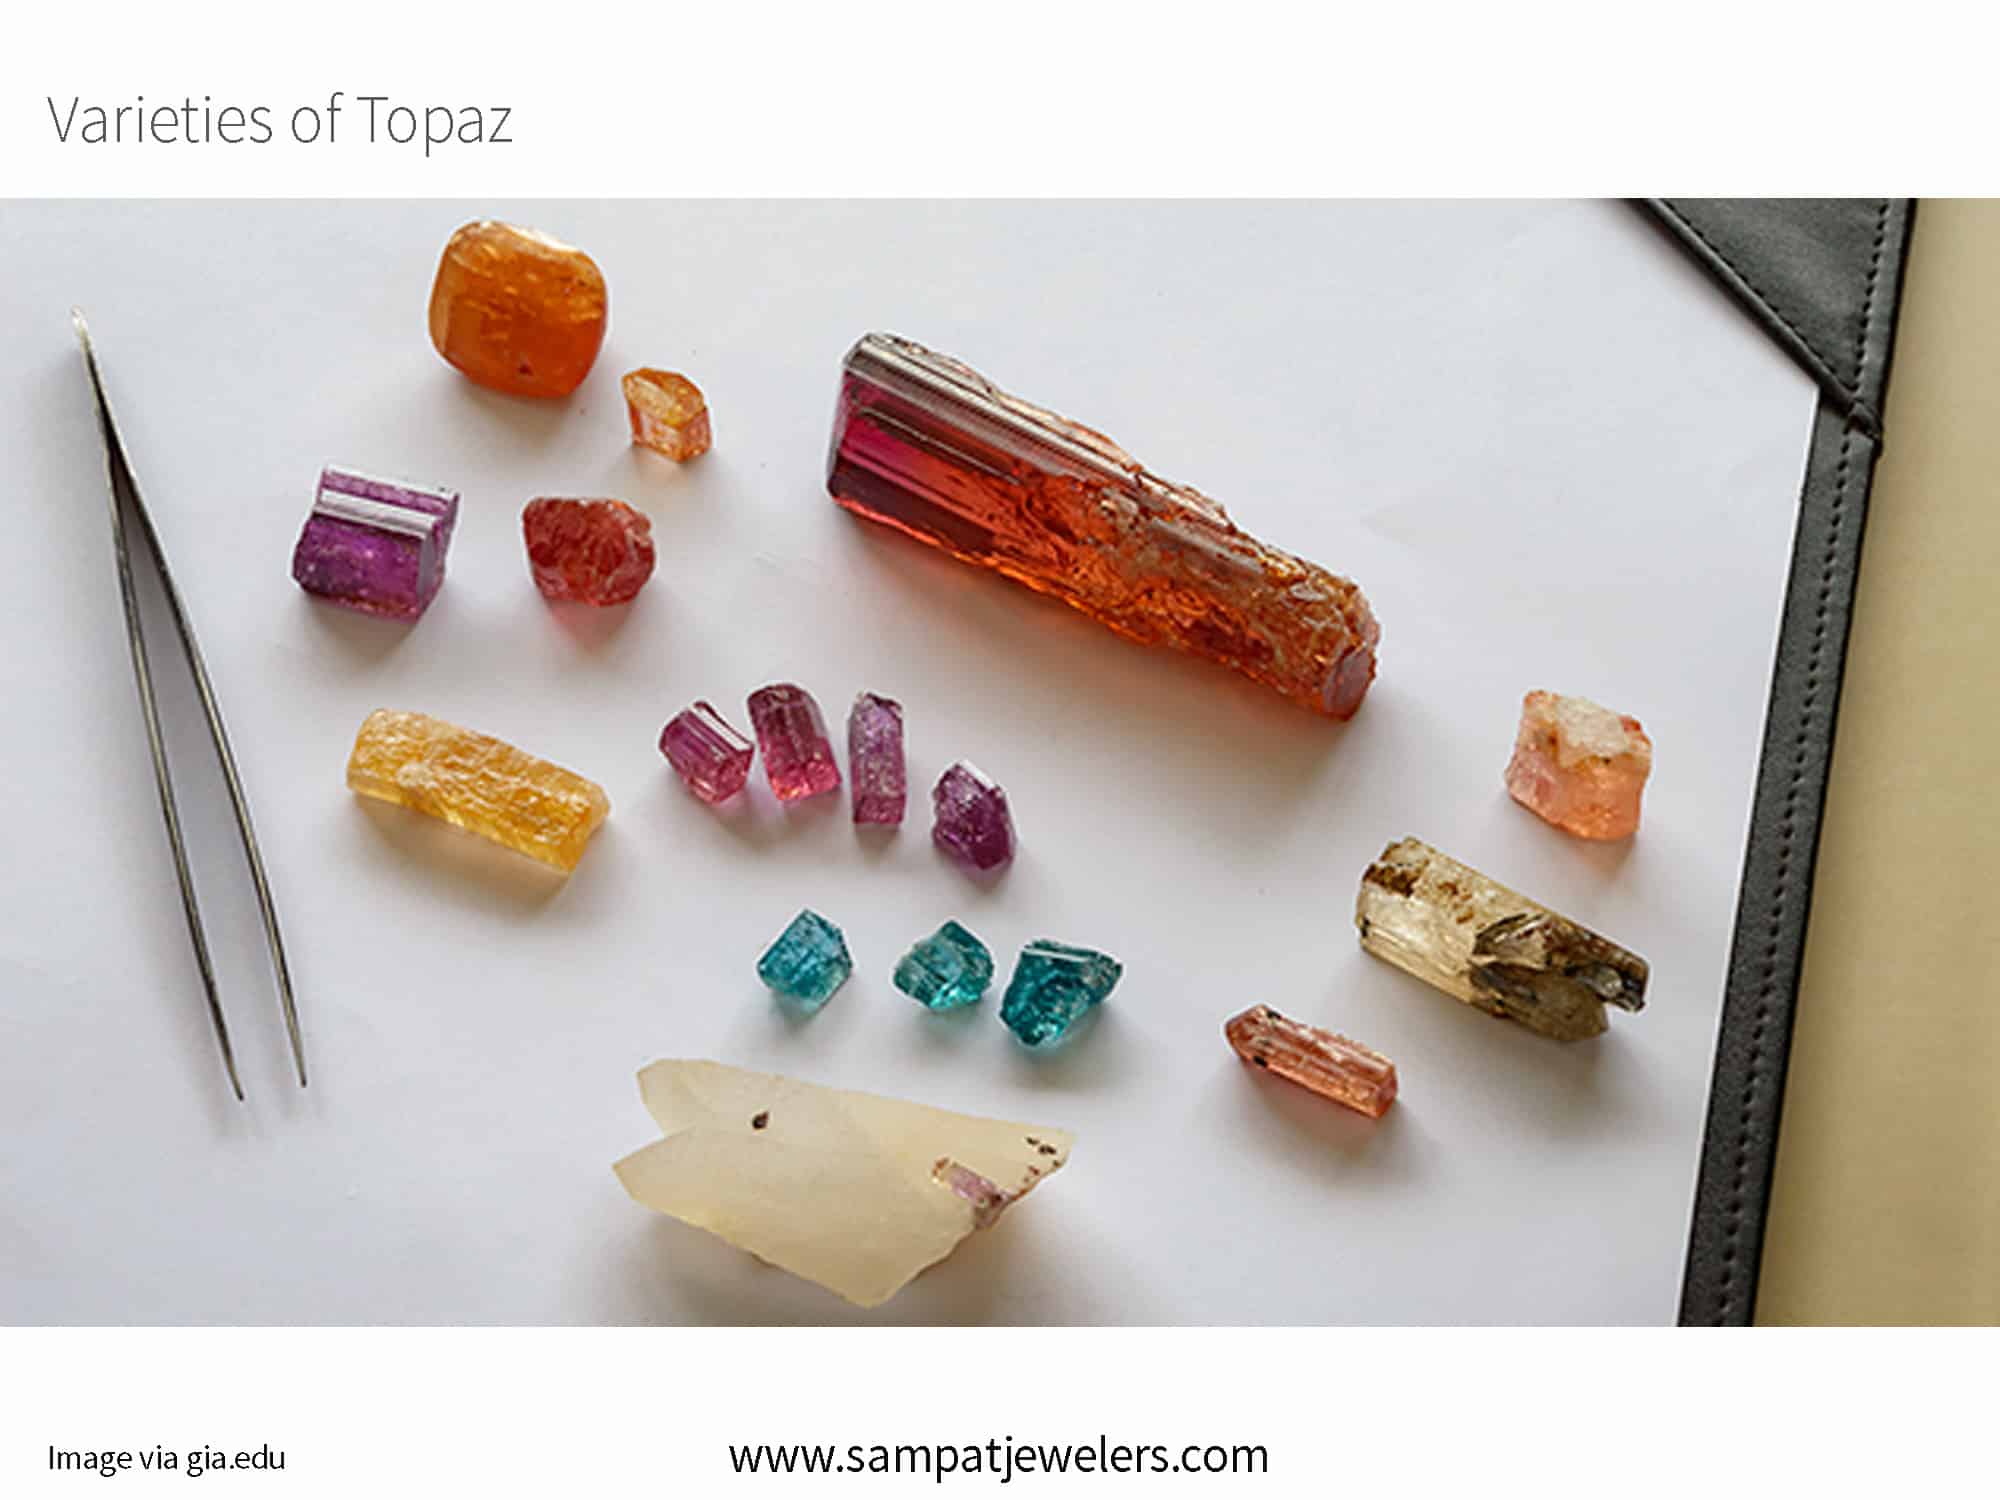 topaz varieties